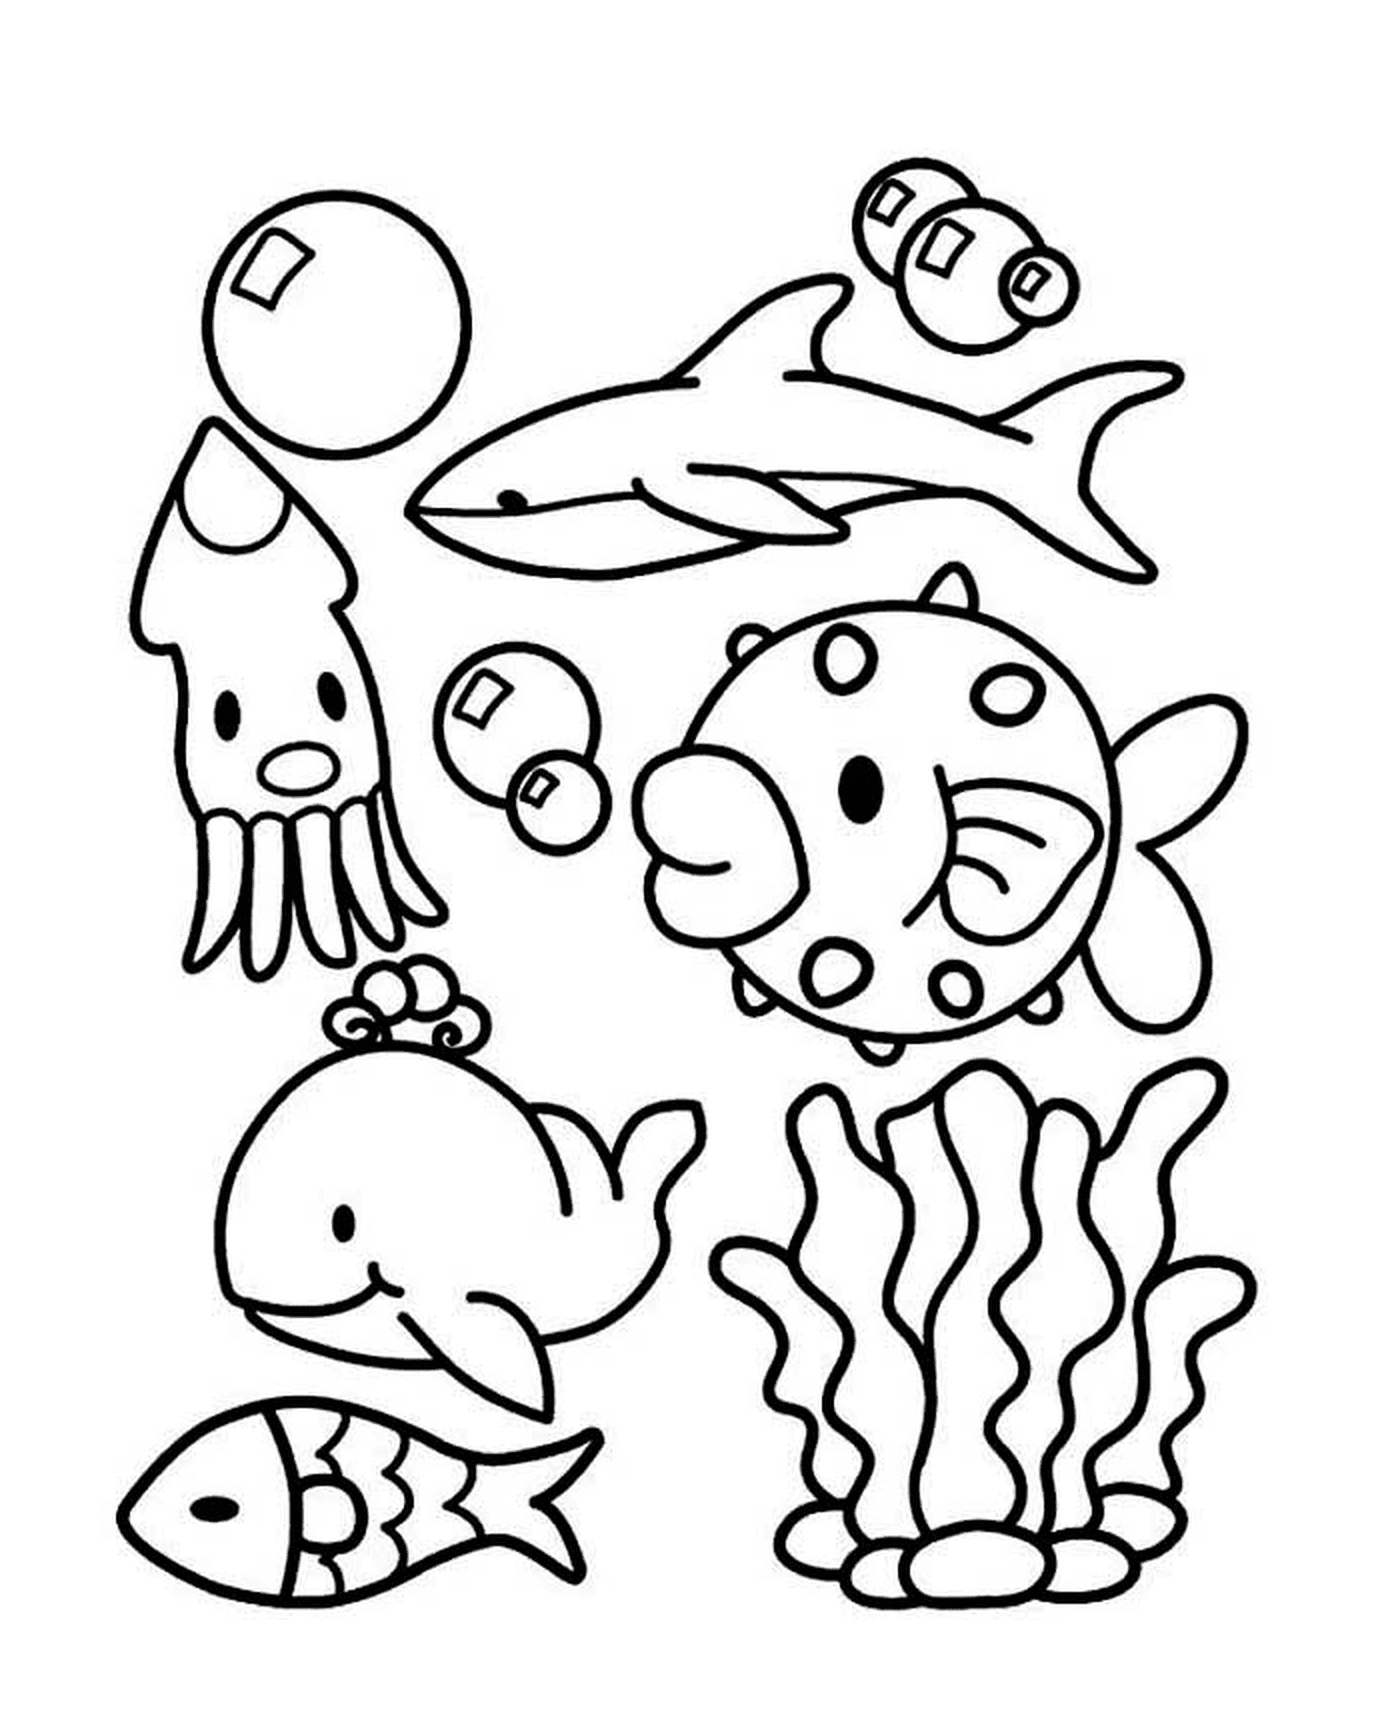  Um grupo de animais marinhos na água 